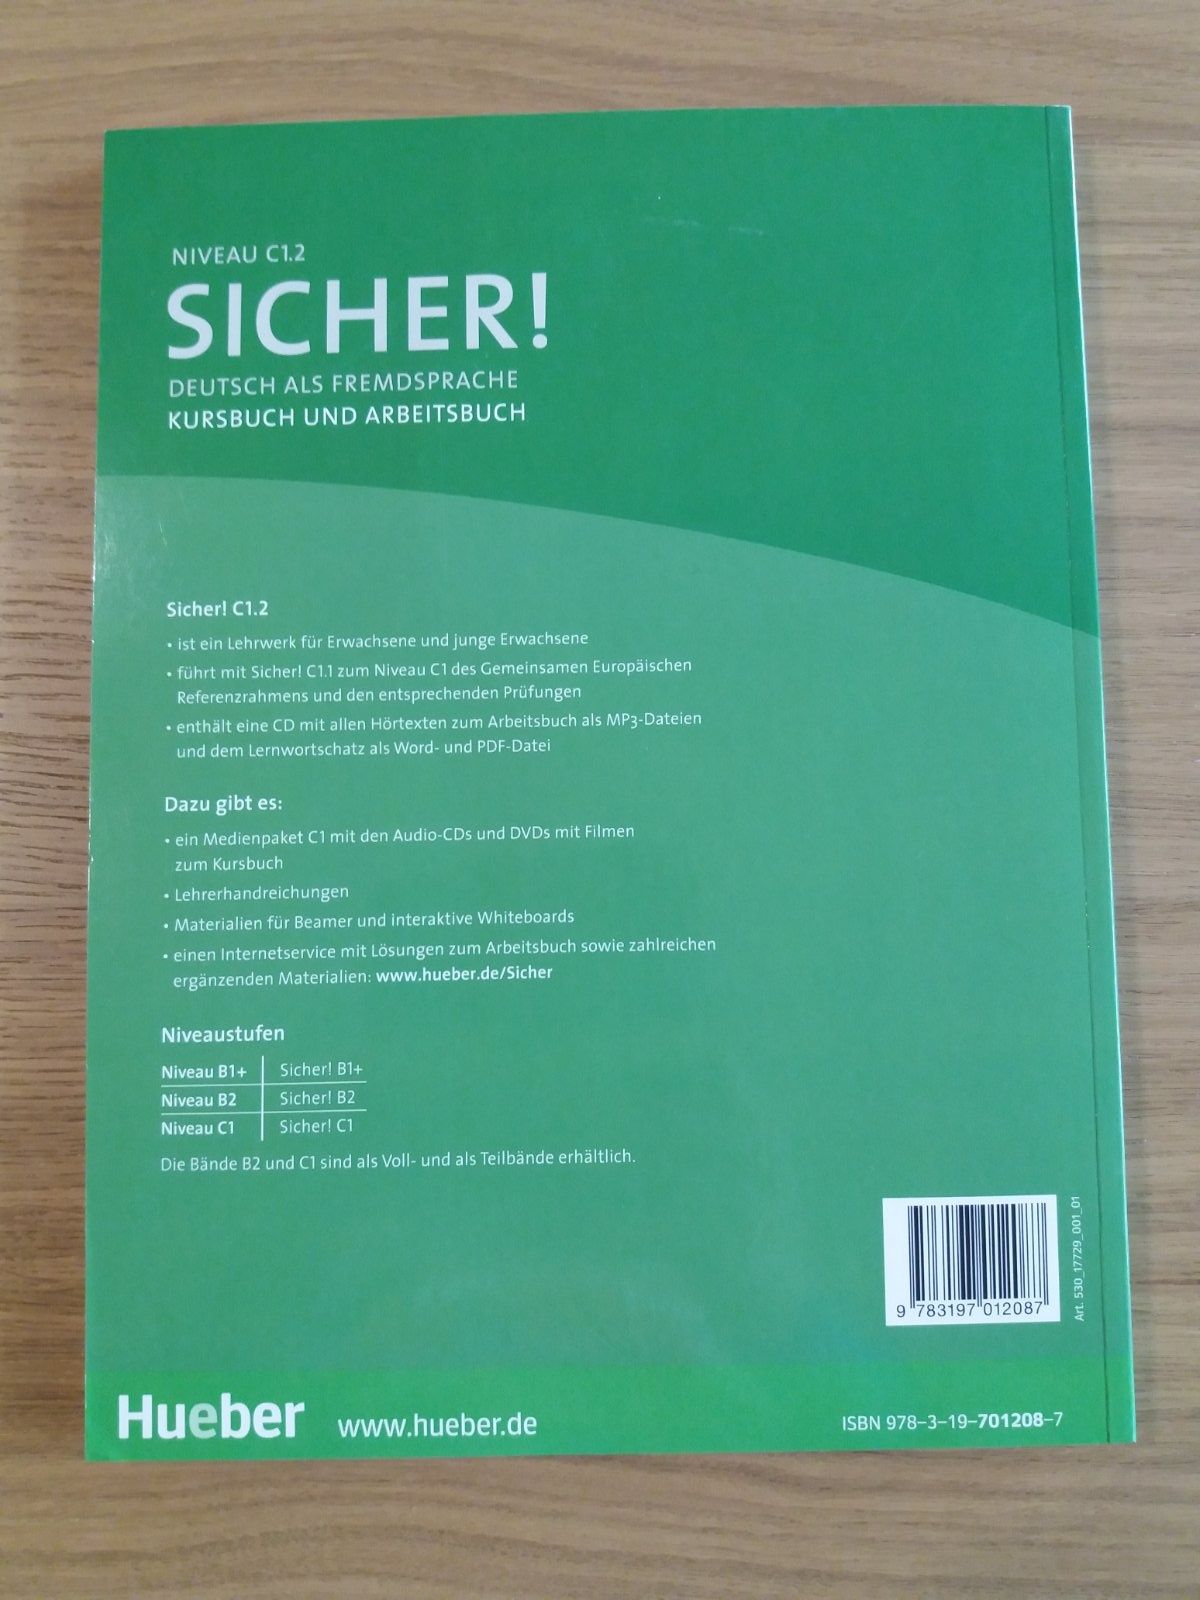 Sicher! Deutsch als fremdesprache. Kursbuch und Arbeitsbuch. C1.2